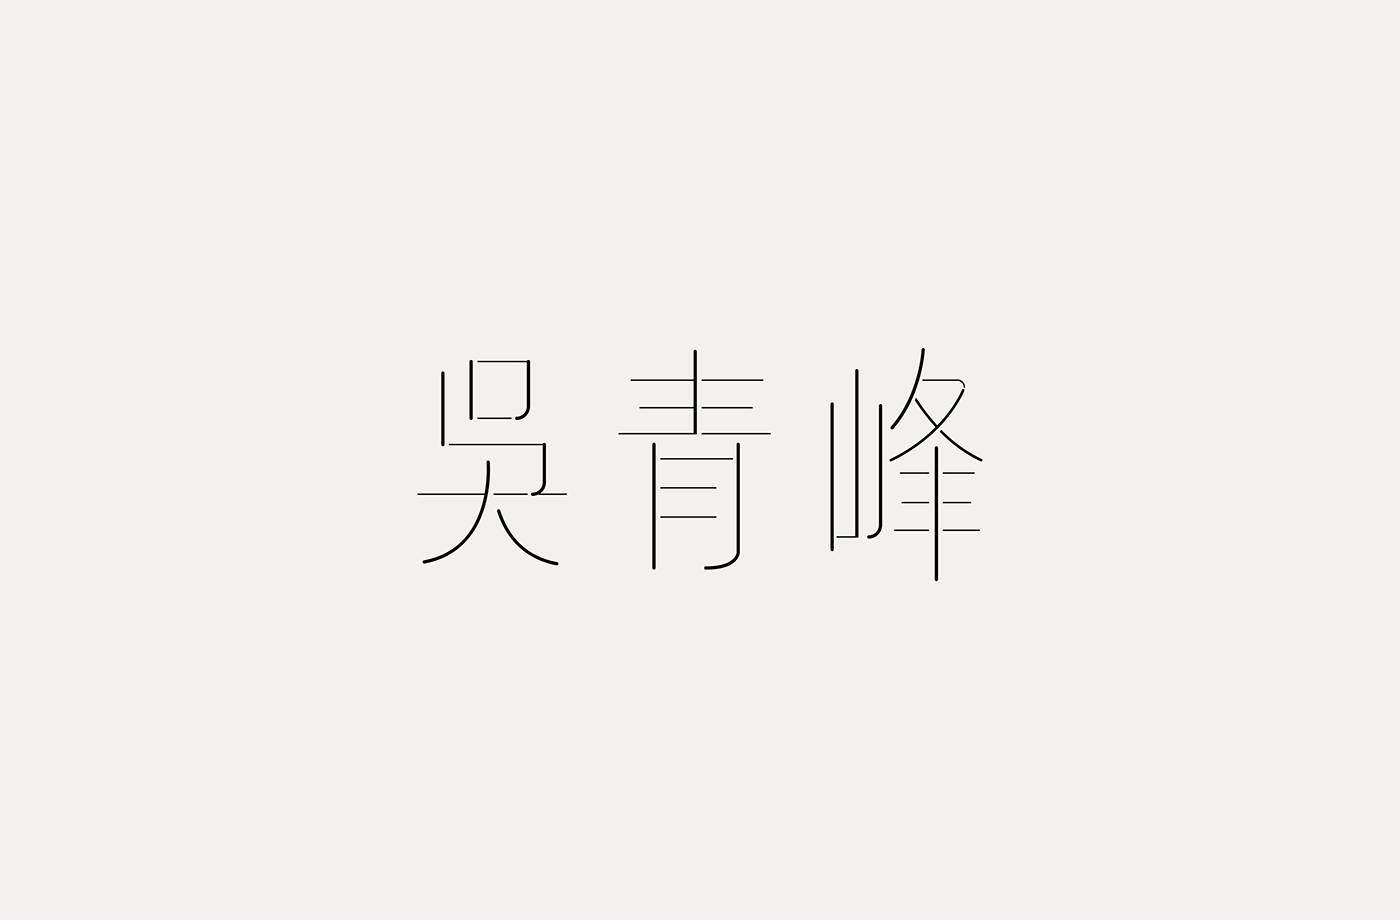 台湾设计师張文瑄字体设计作品